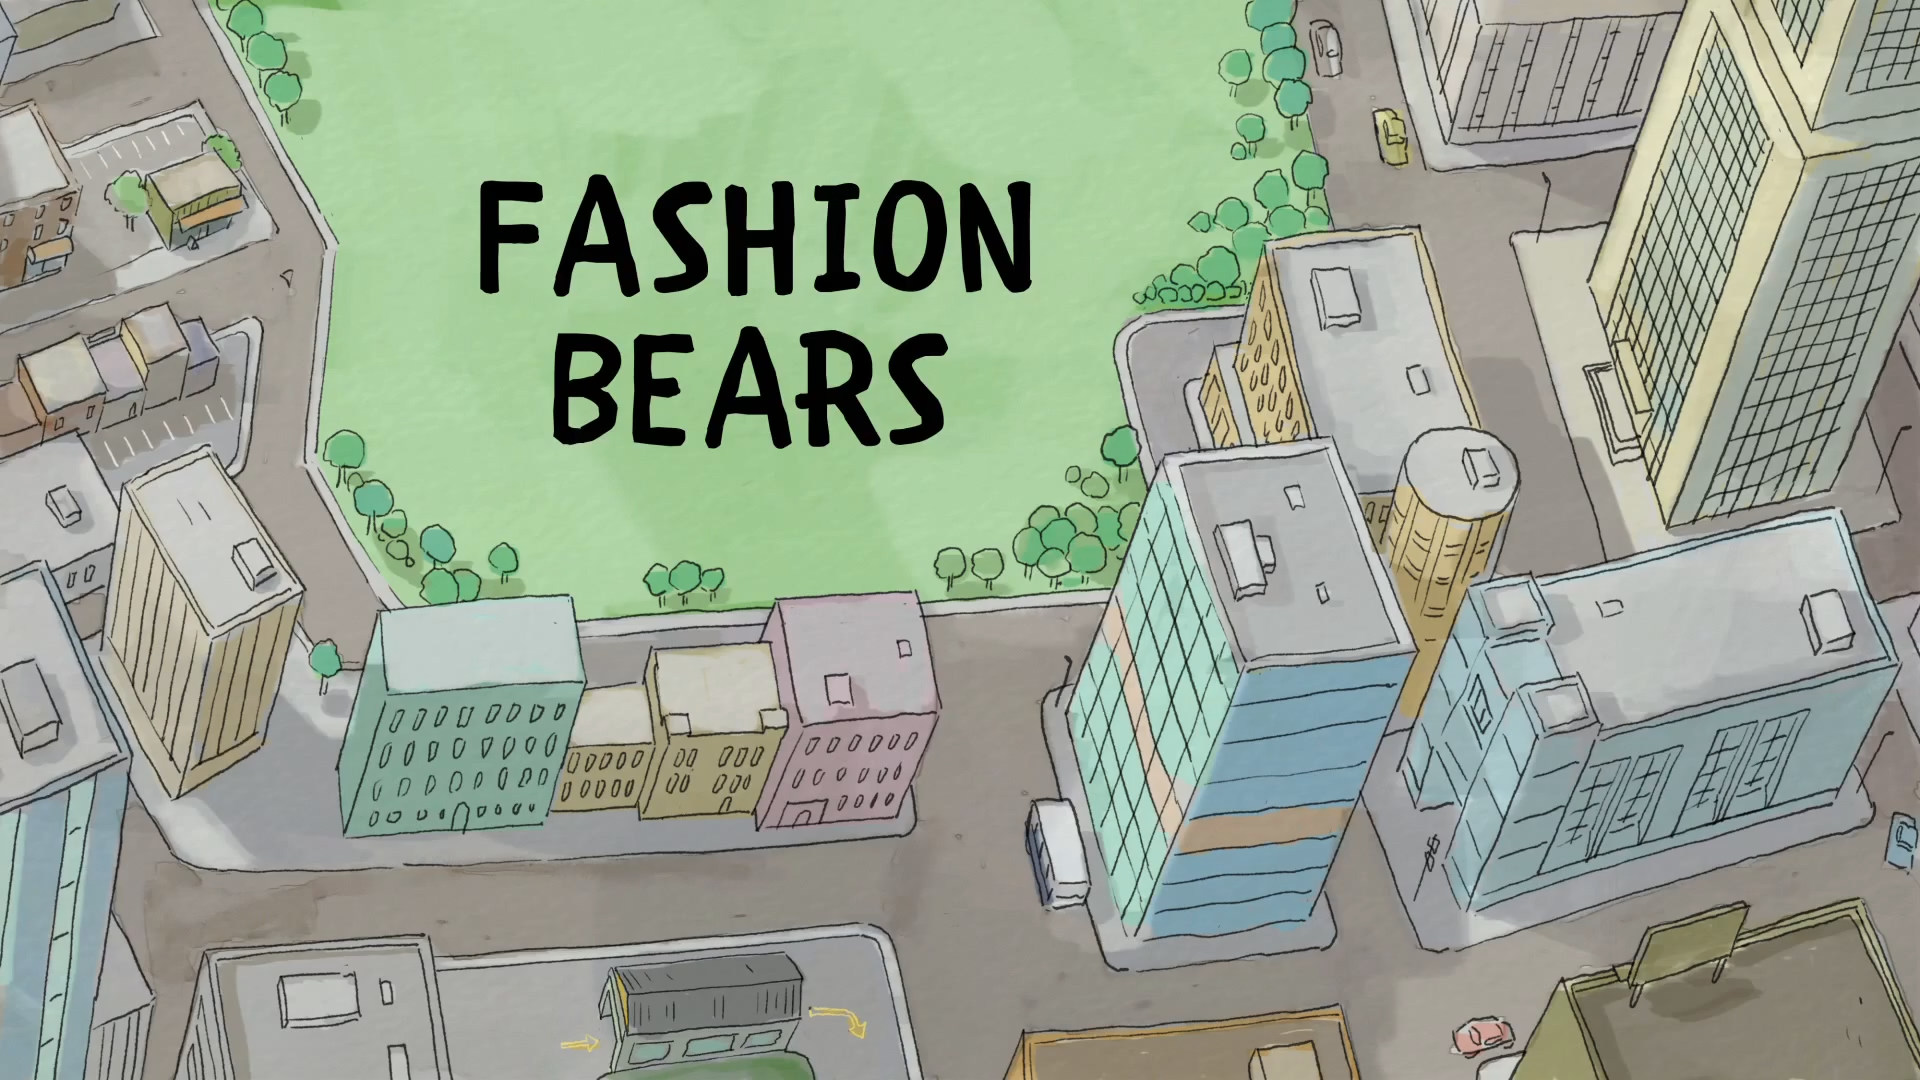 Fashion Bears. We Bare Bears